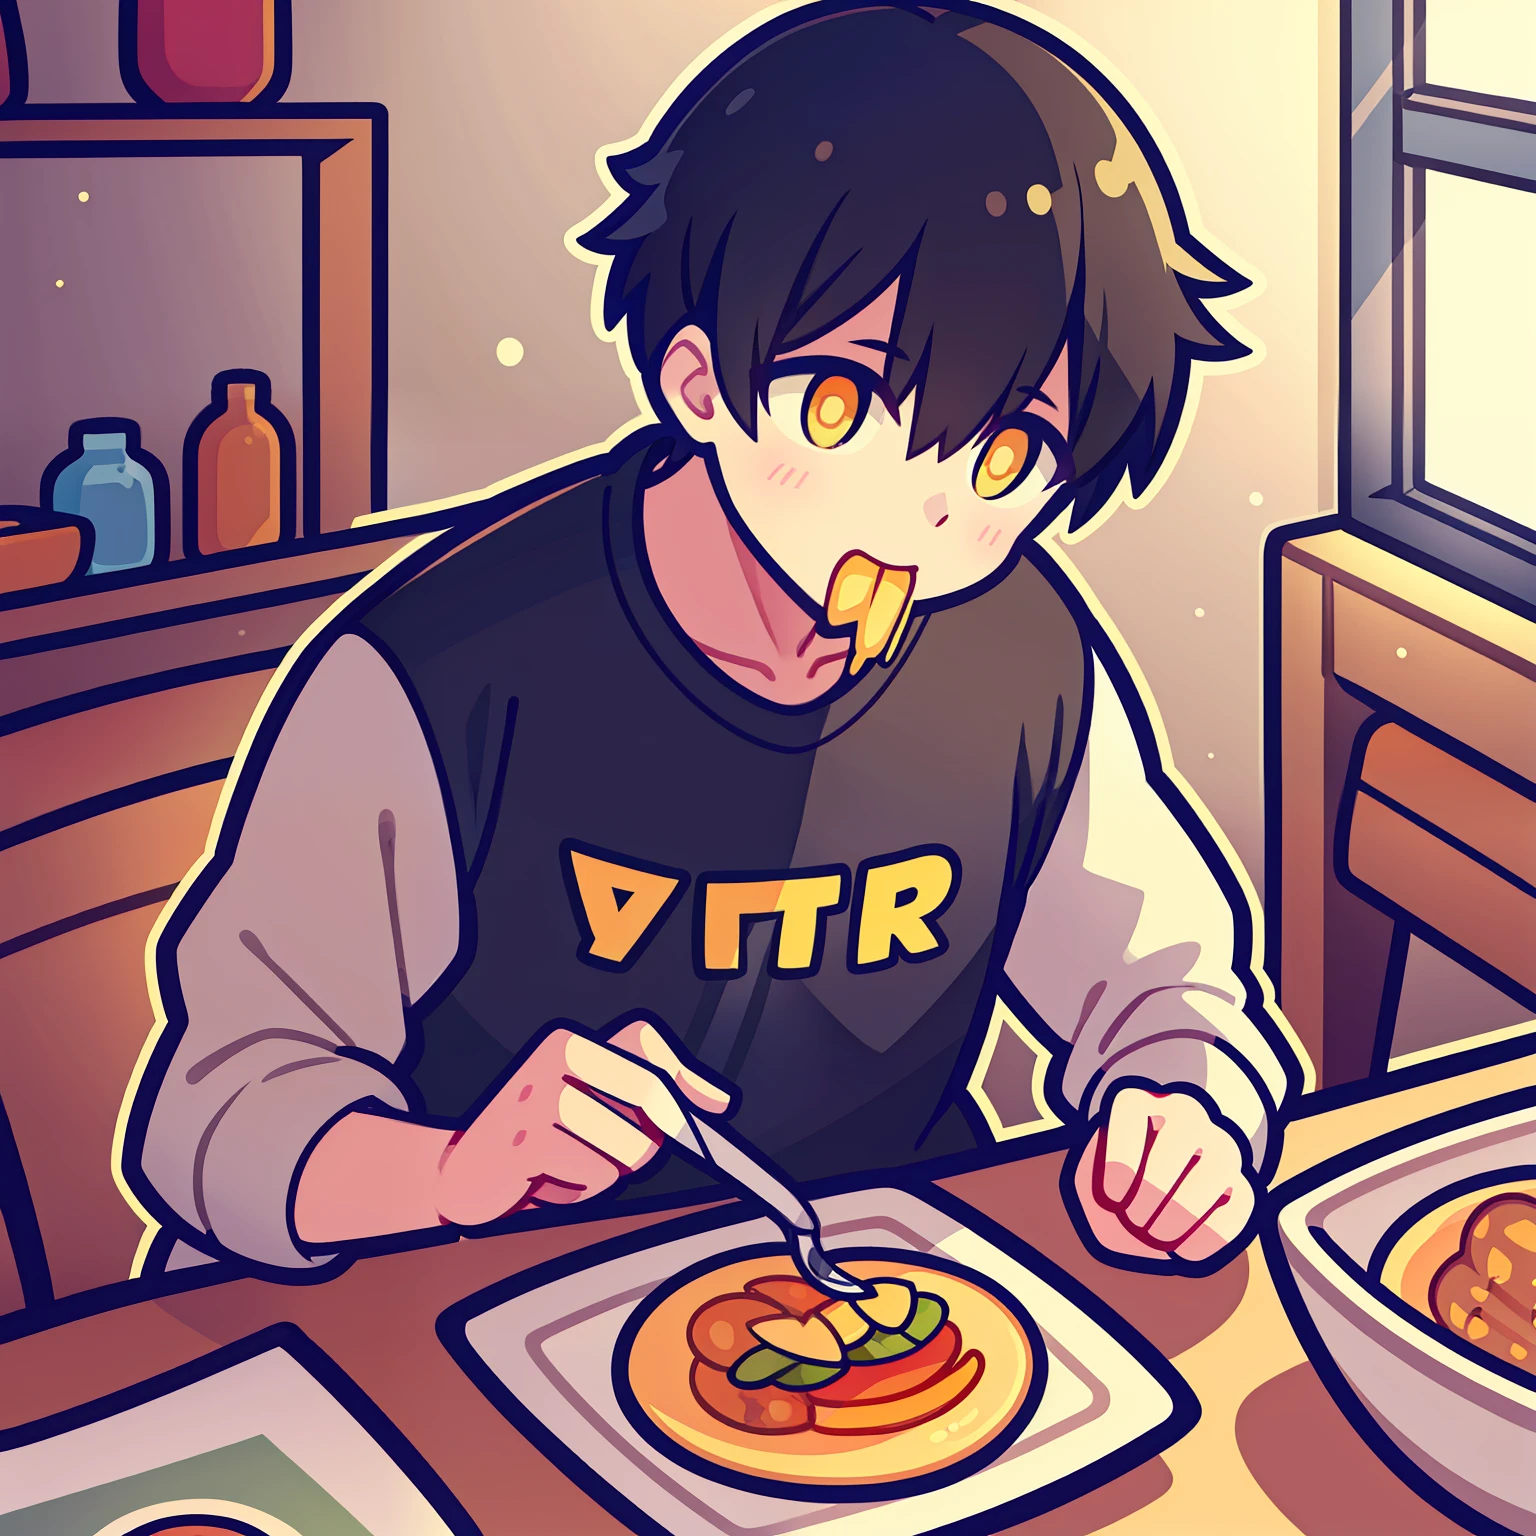 Мальчик с короткими черными волосами и желтыми зрачками обедает в стиле гравюры Q